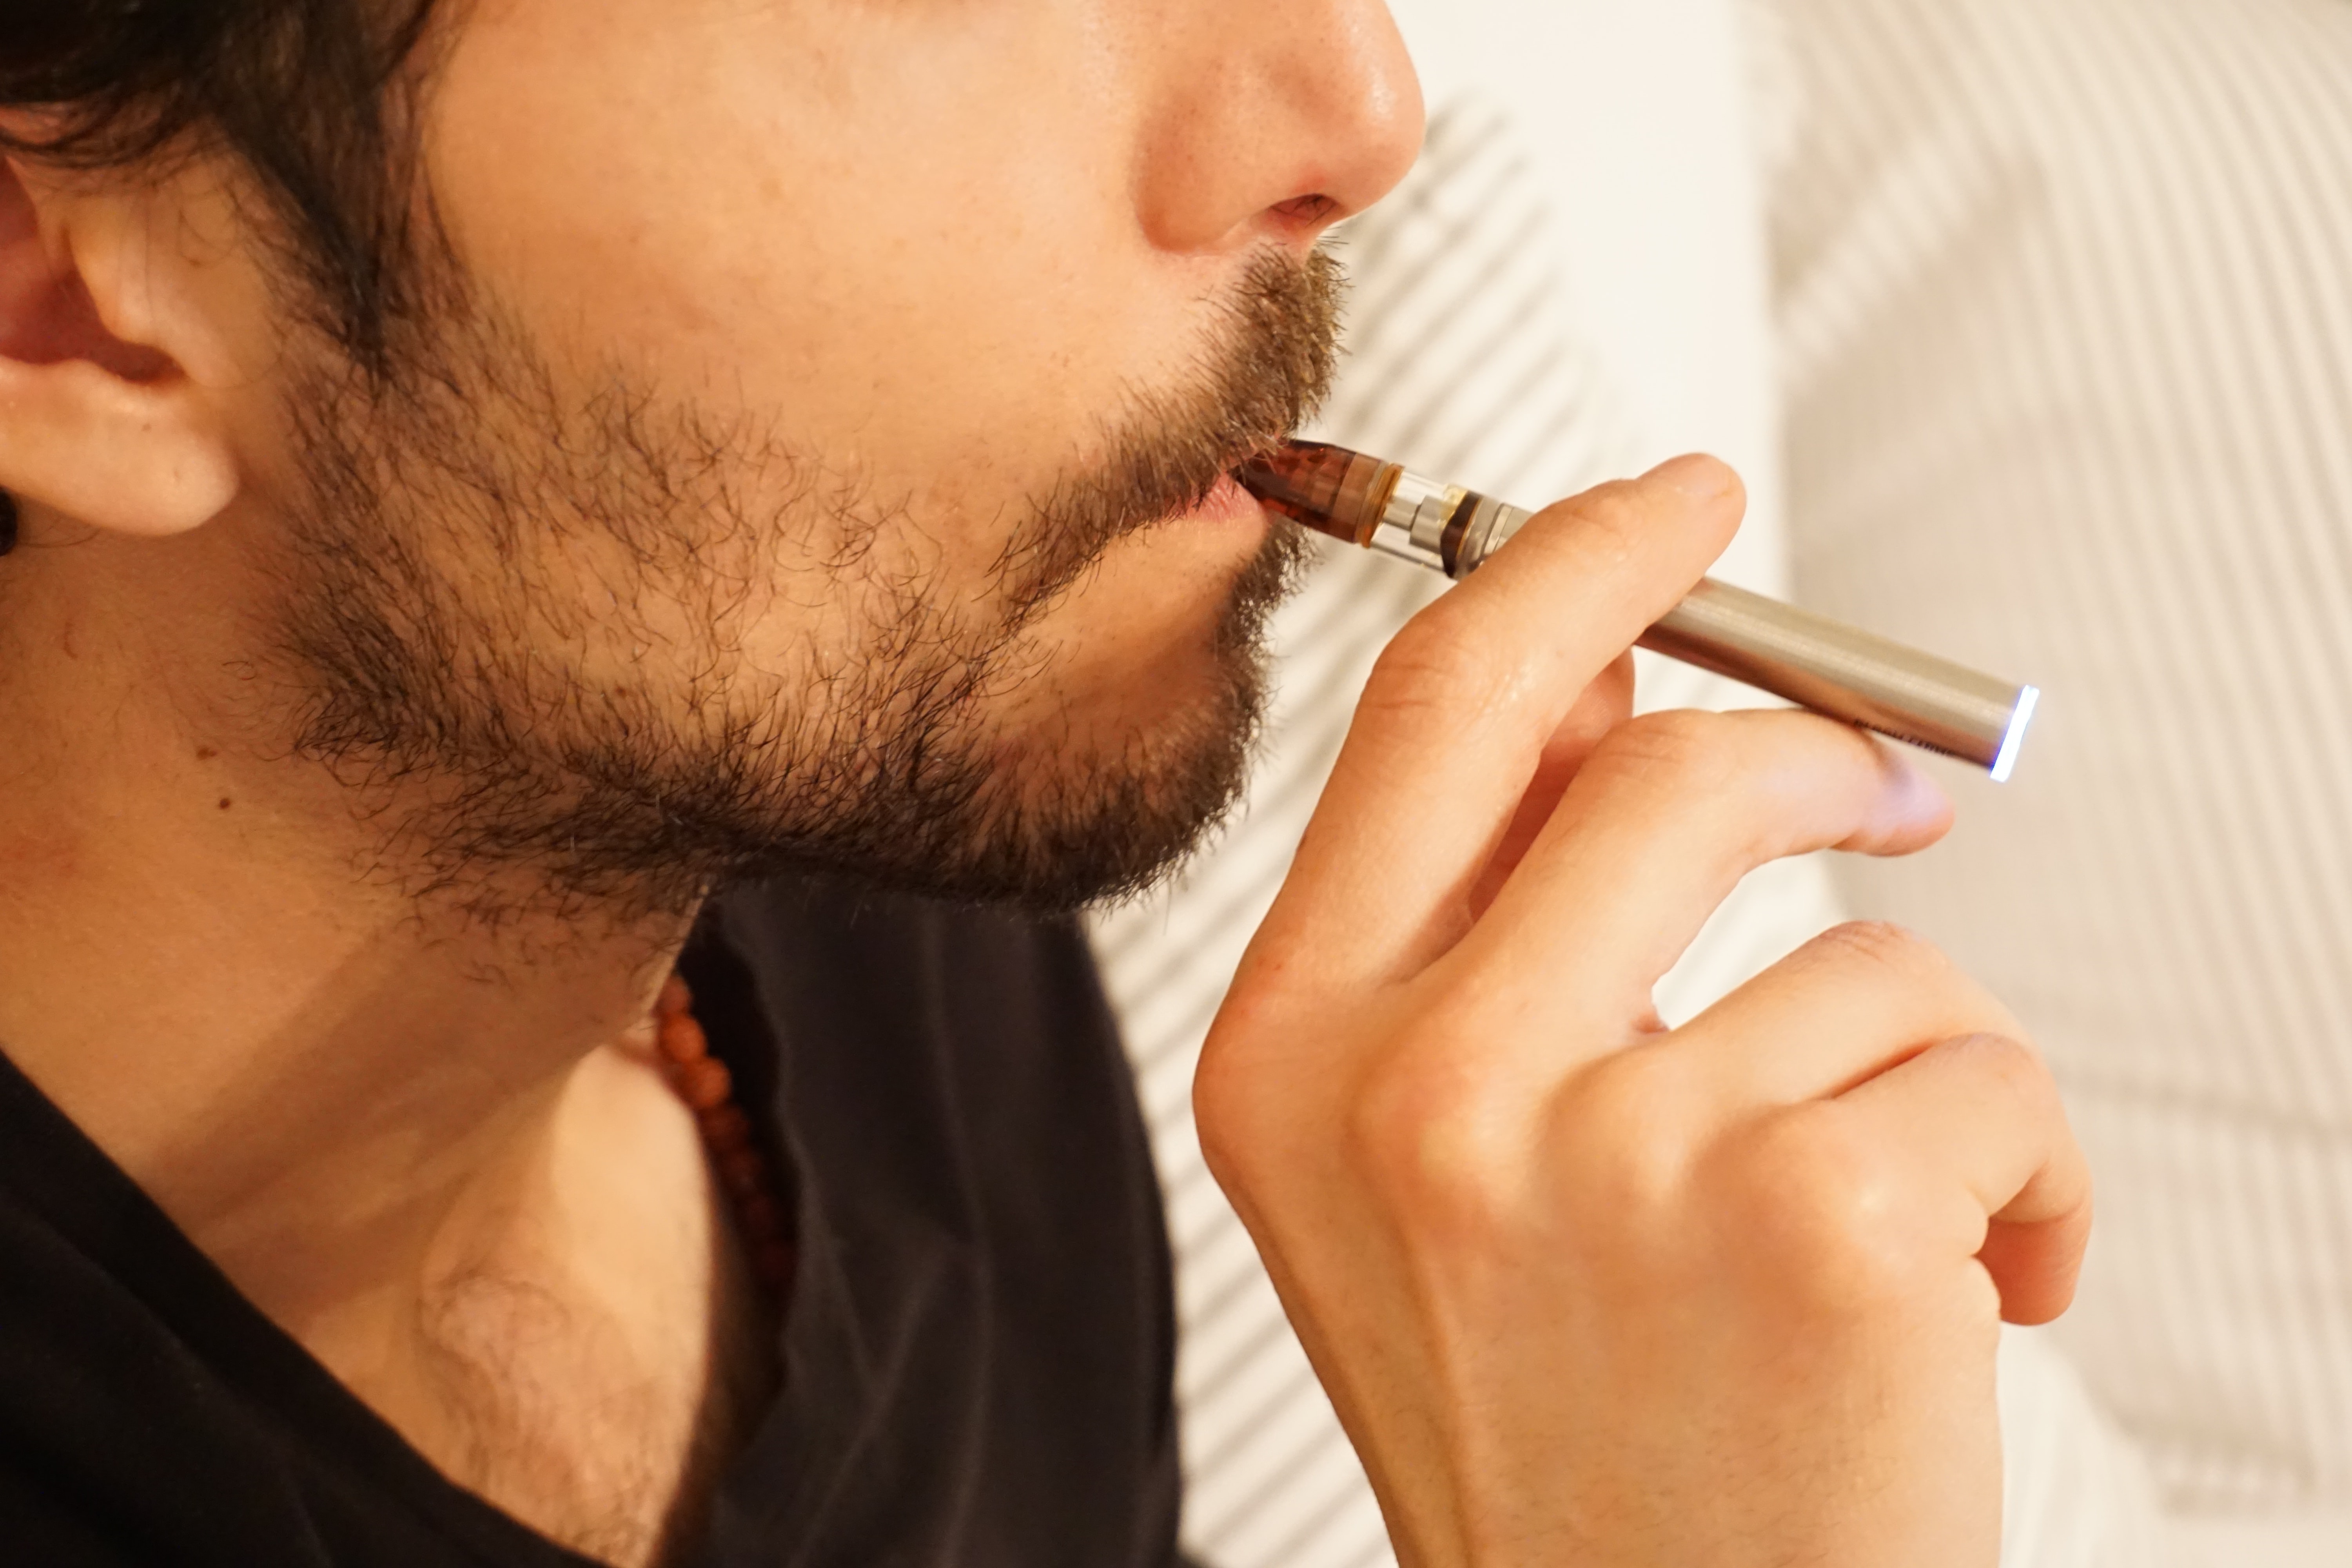 Kaj je bolj škodljivo, e-cigareta ali cigareta?